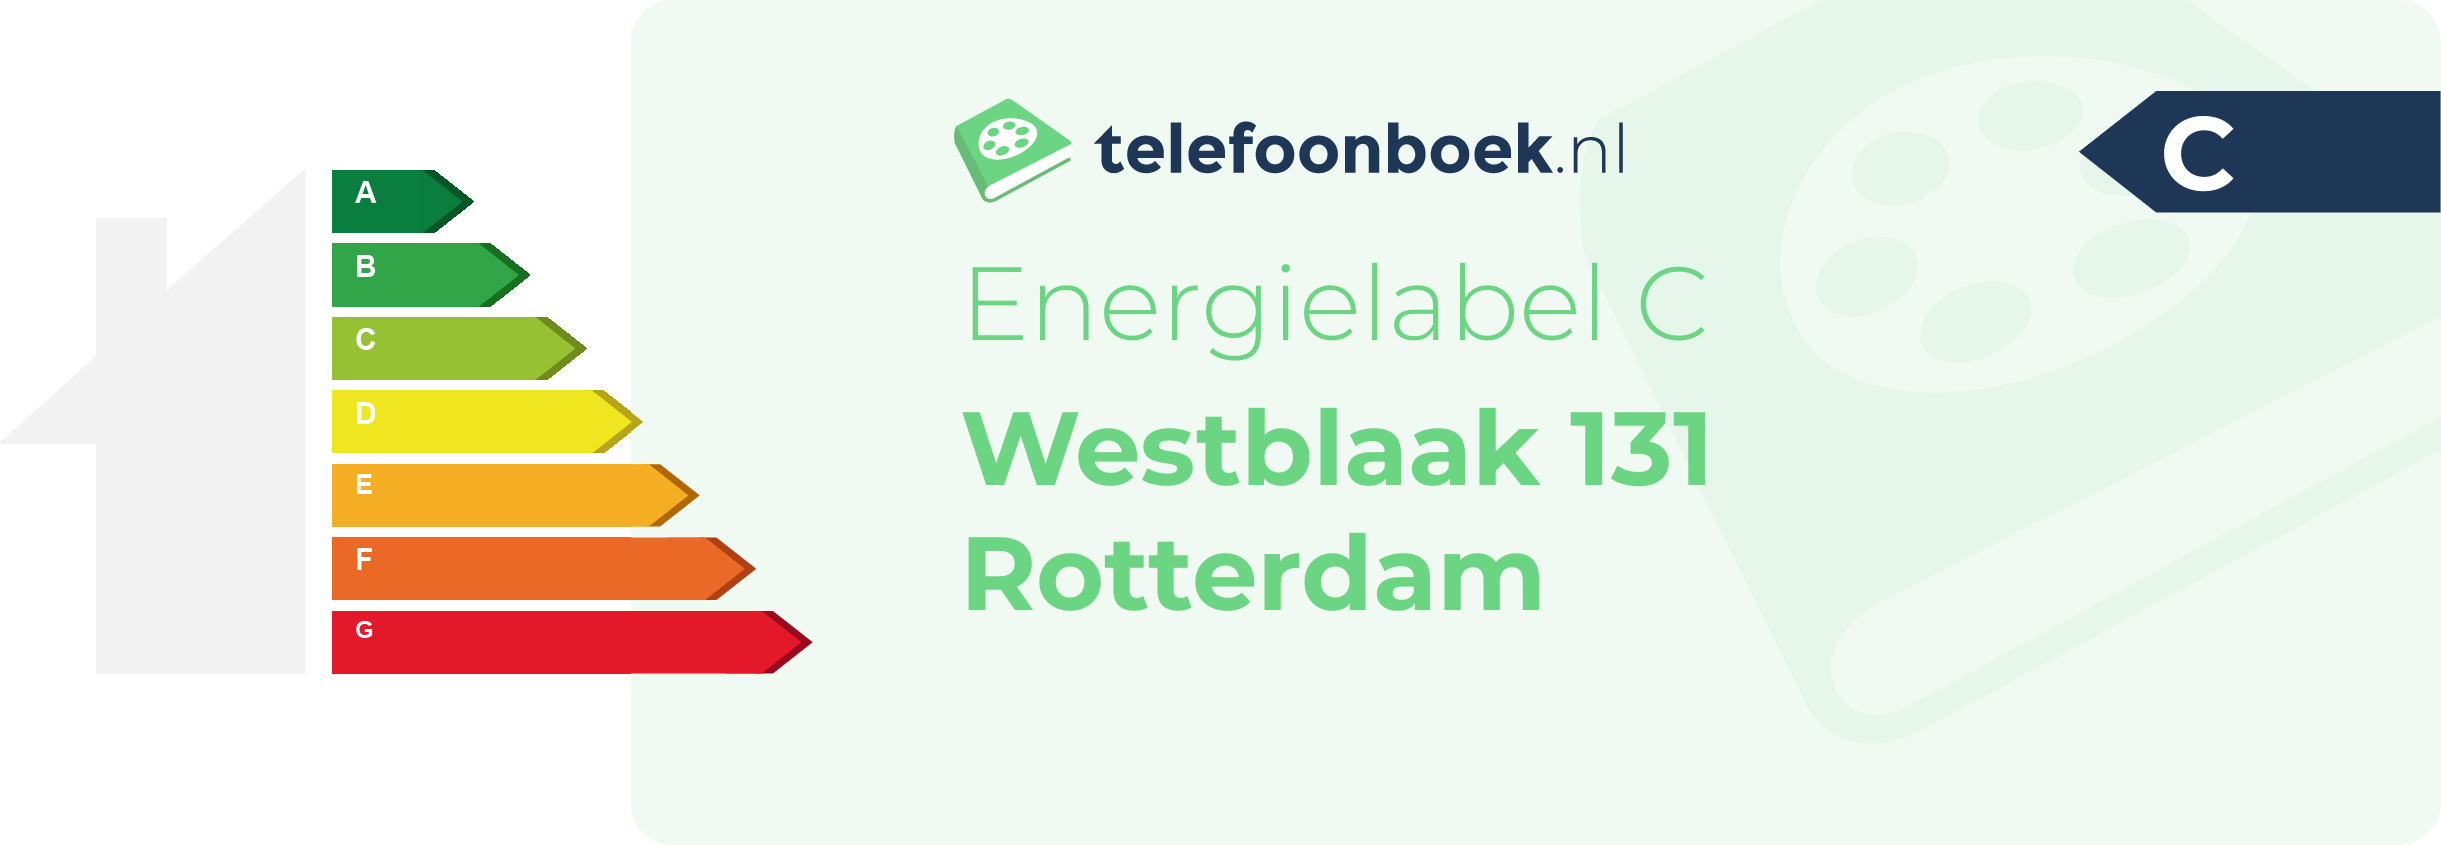 Energielabel Westblaak 131 Rotterdam